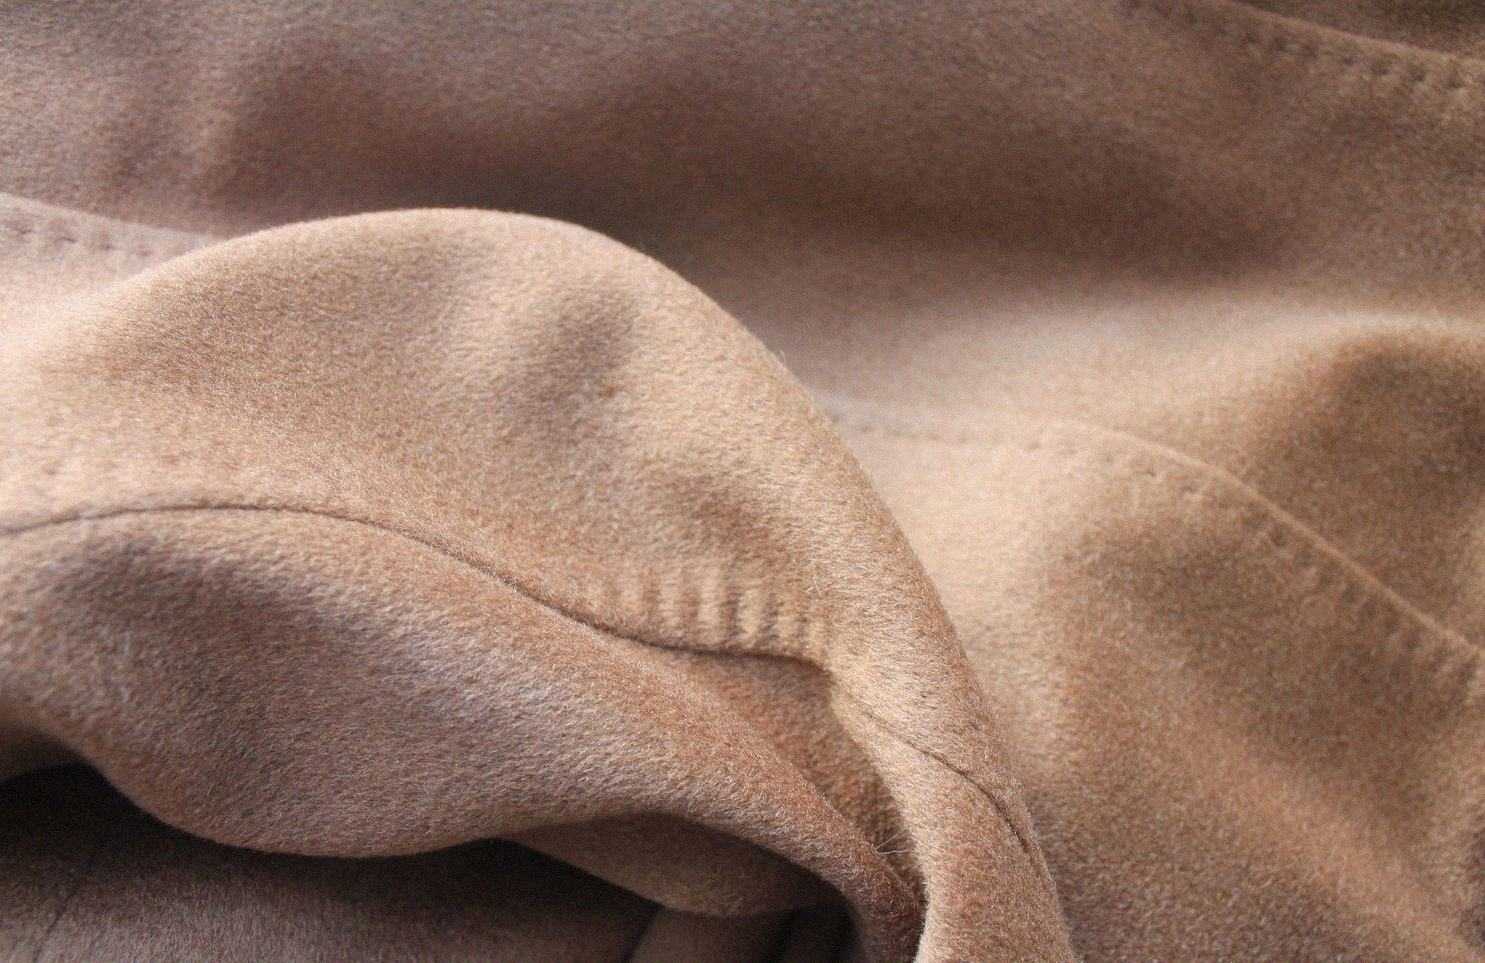 Особенности вирджинской шерсти, описание кашемировой ткани лана